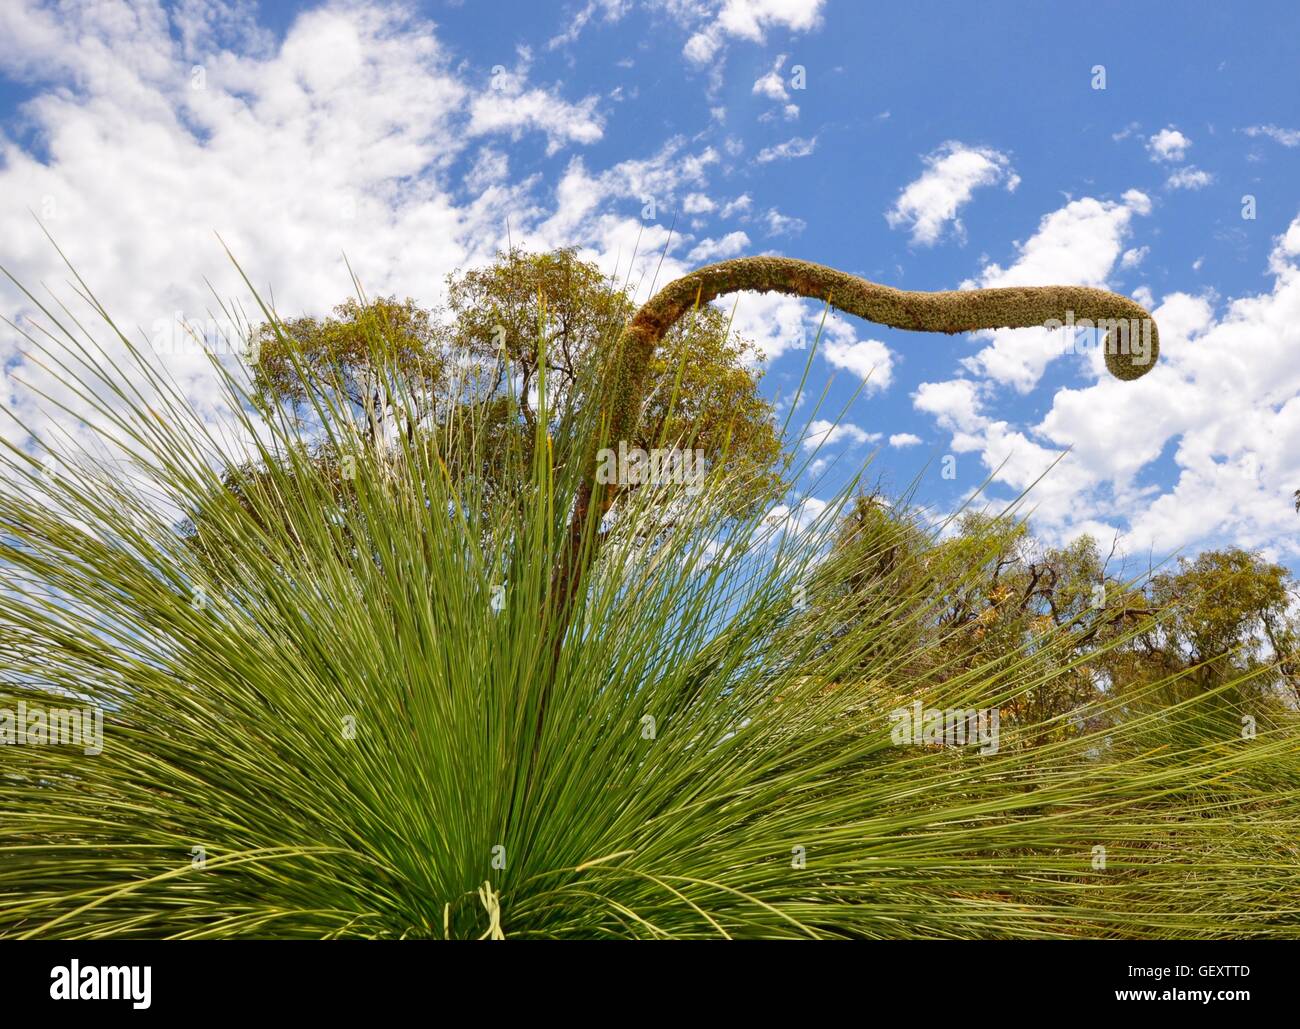 Dettaglio del yakka unico albero o albero di erba, con foglie pungenti e grandi curly stame in bushland in Western Australia. Foto Stock